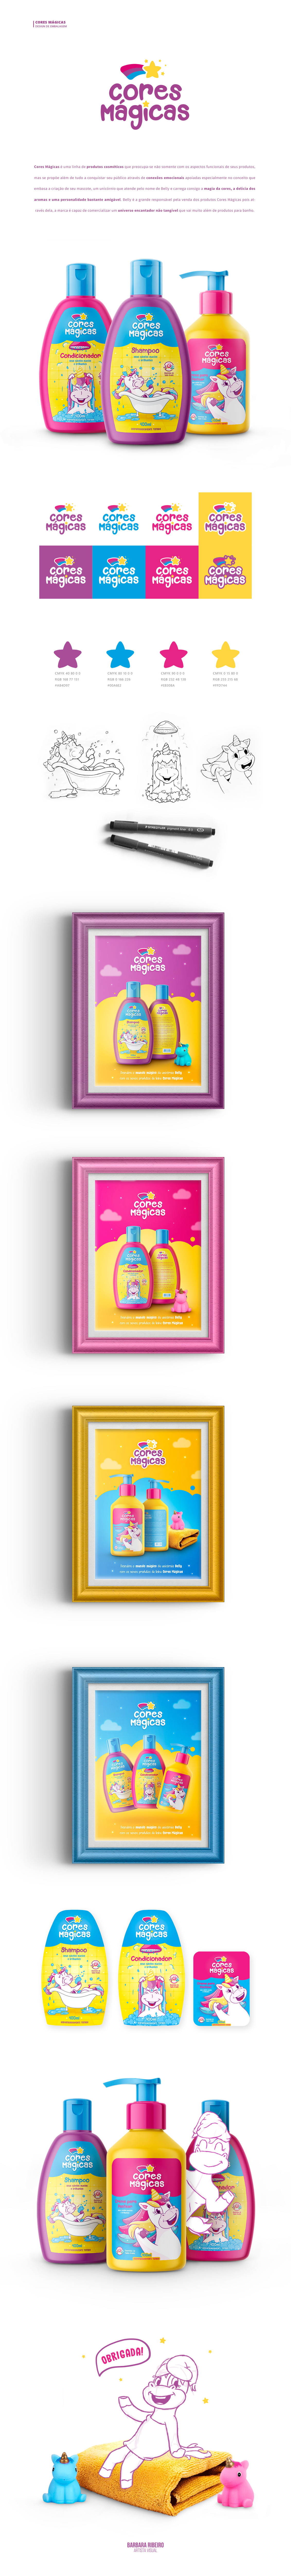 Packaging embalagem Ilustração infantil kids shampoo